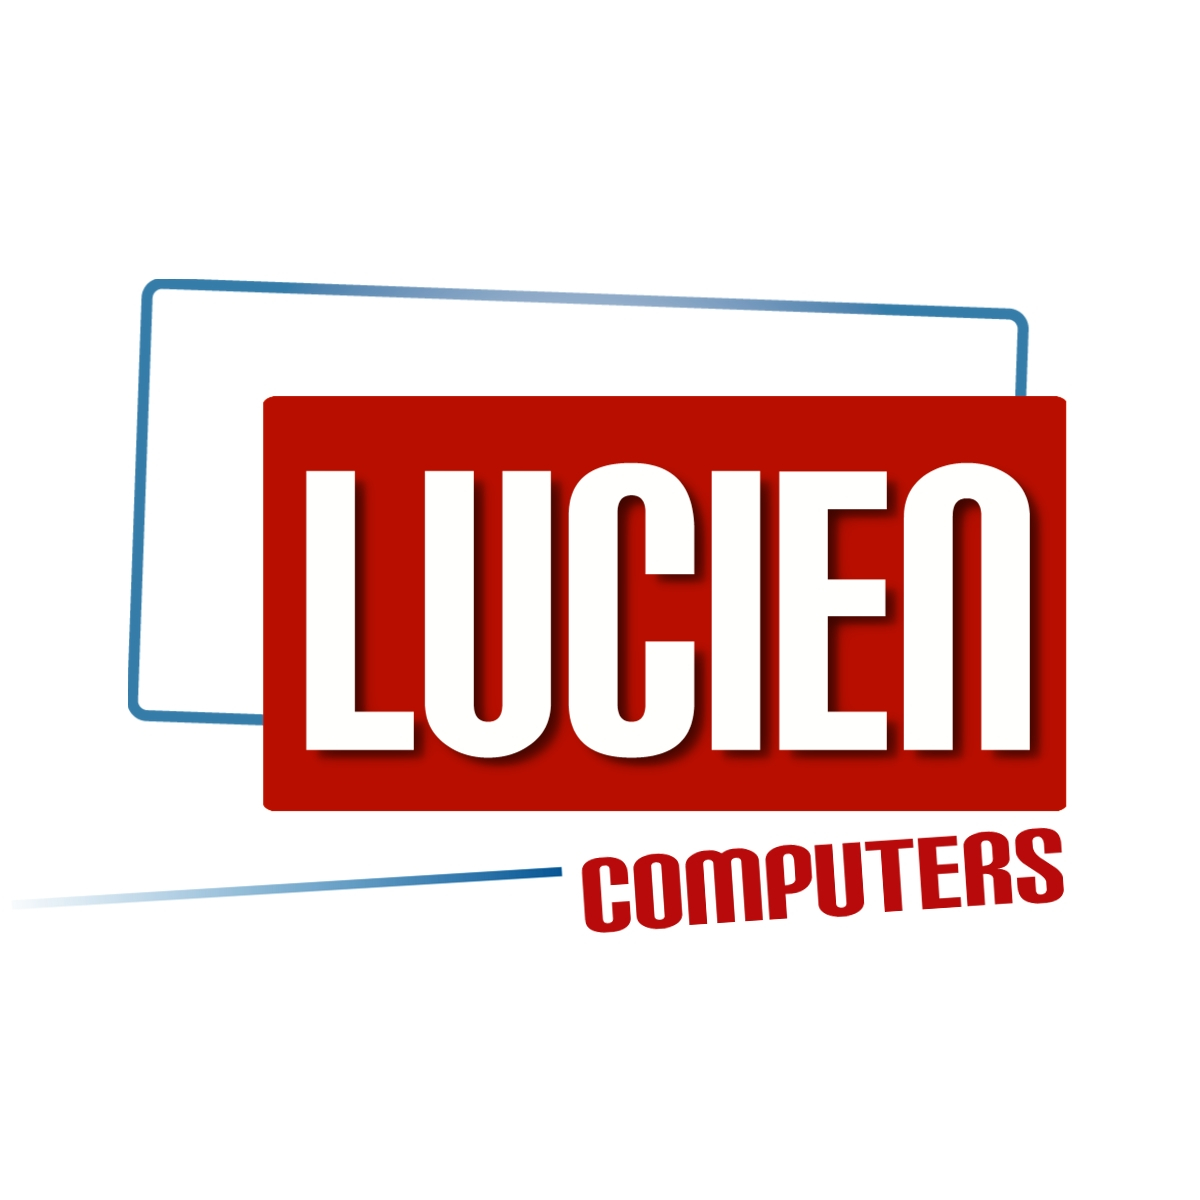 Lucien Computerss achtergrond